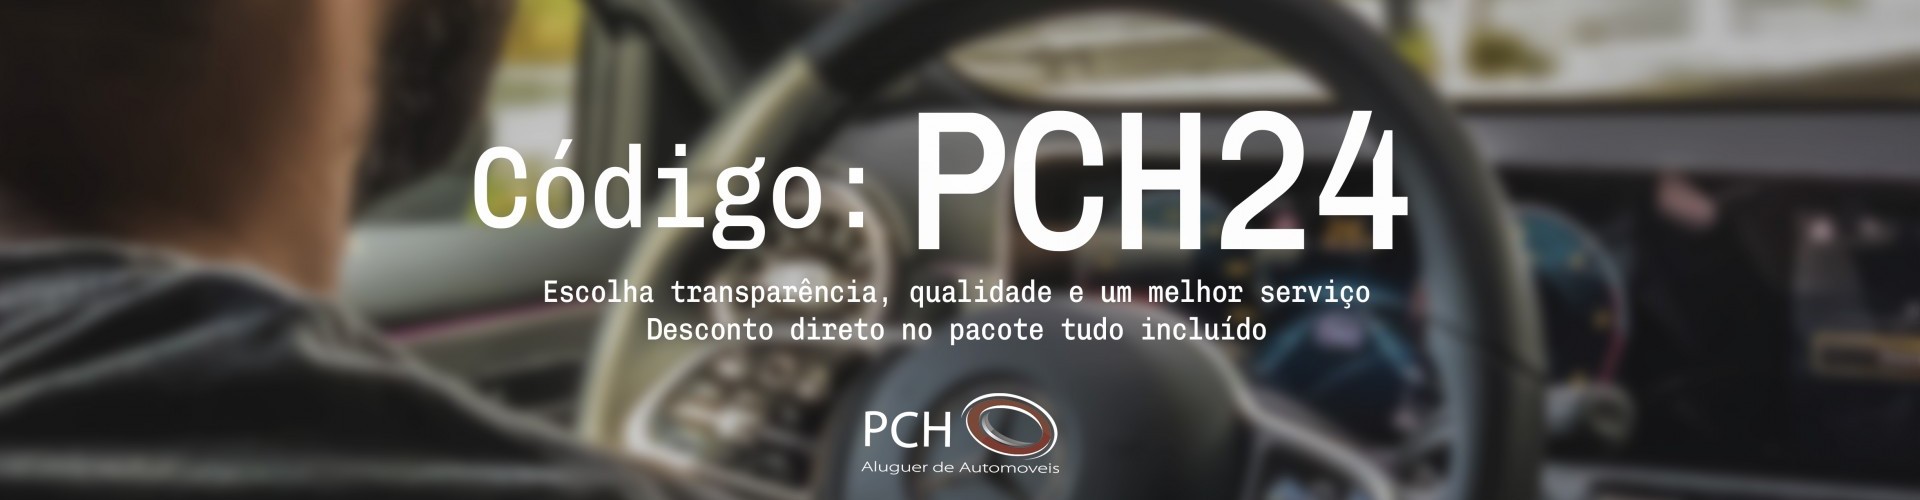 CODIGO PCH24